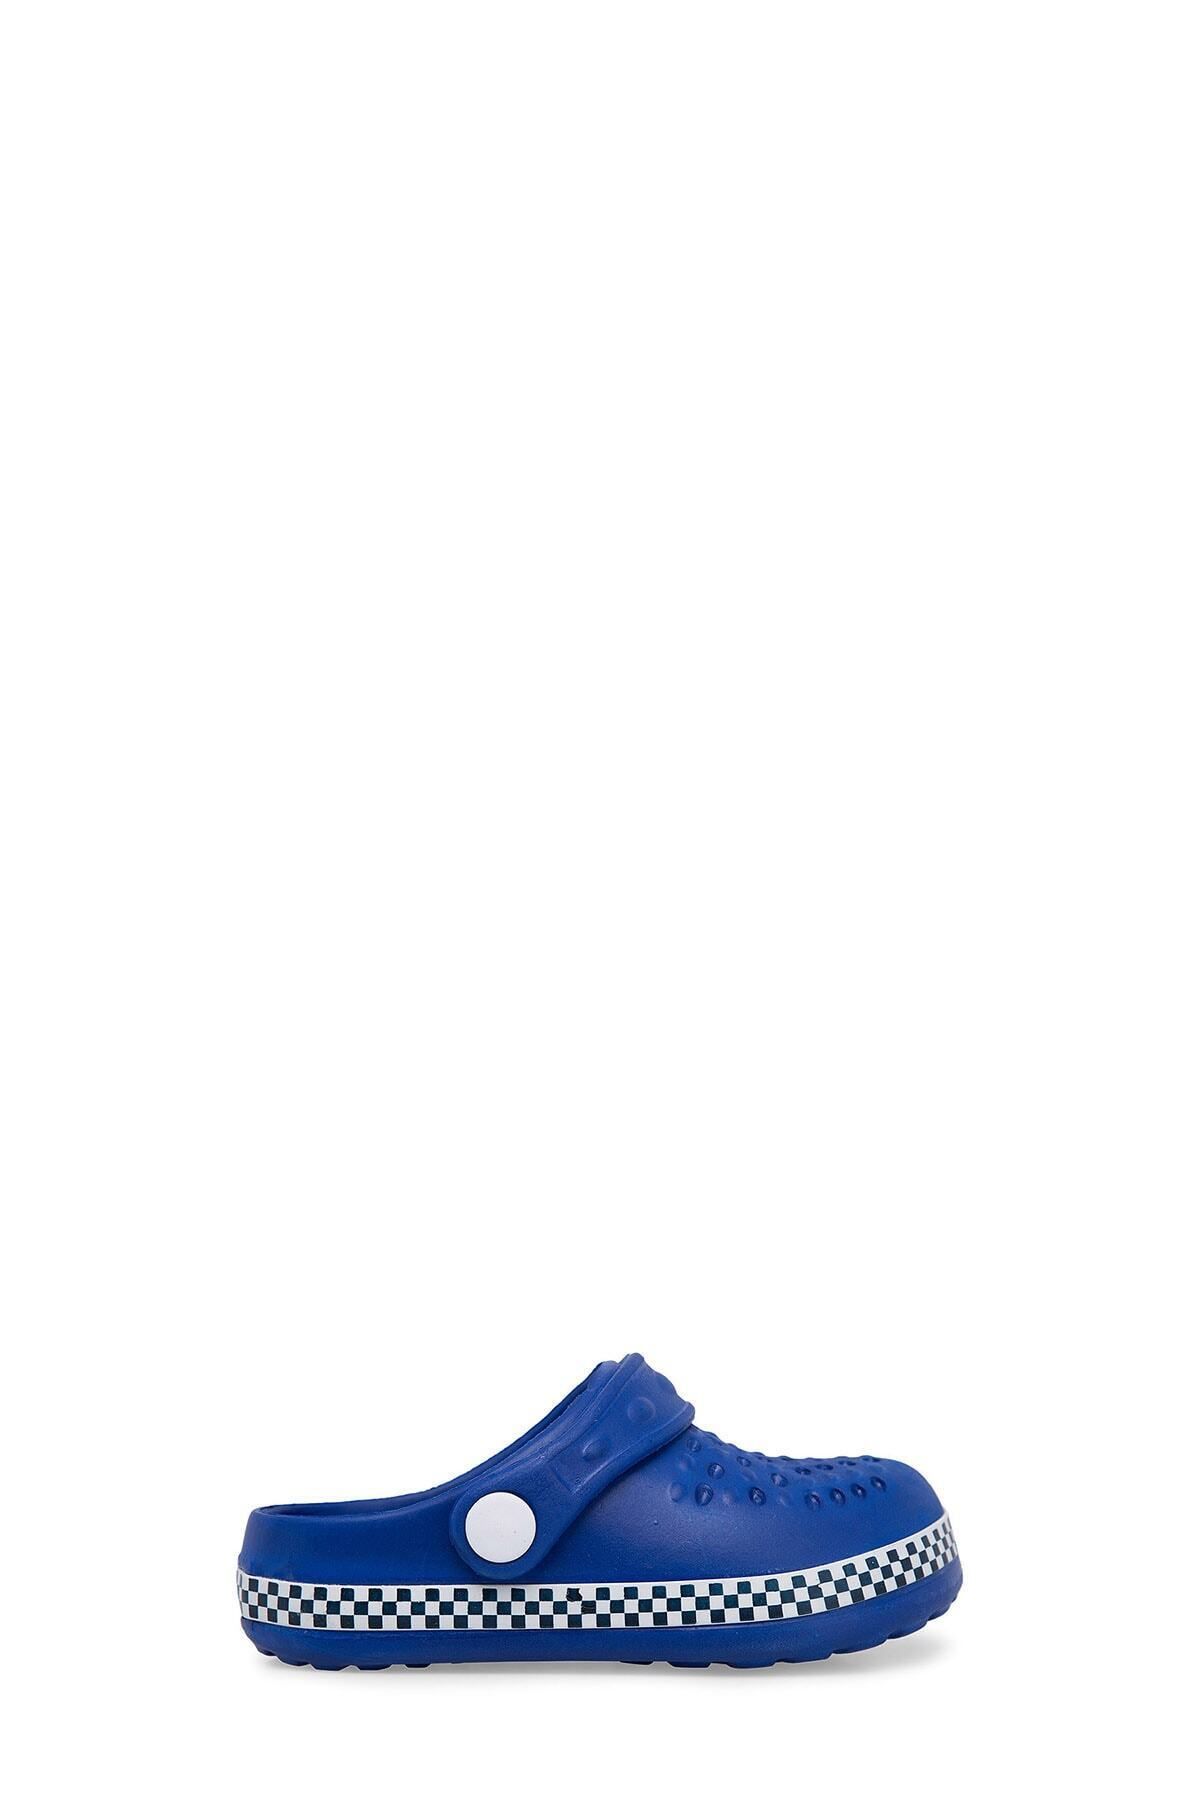 Akınal Bella Unisex Çocuk Mavi Sandalet E060p106